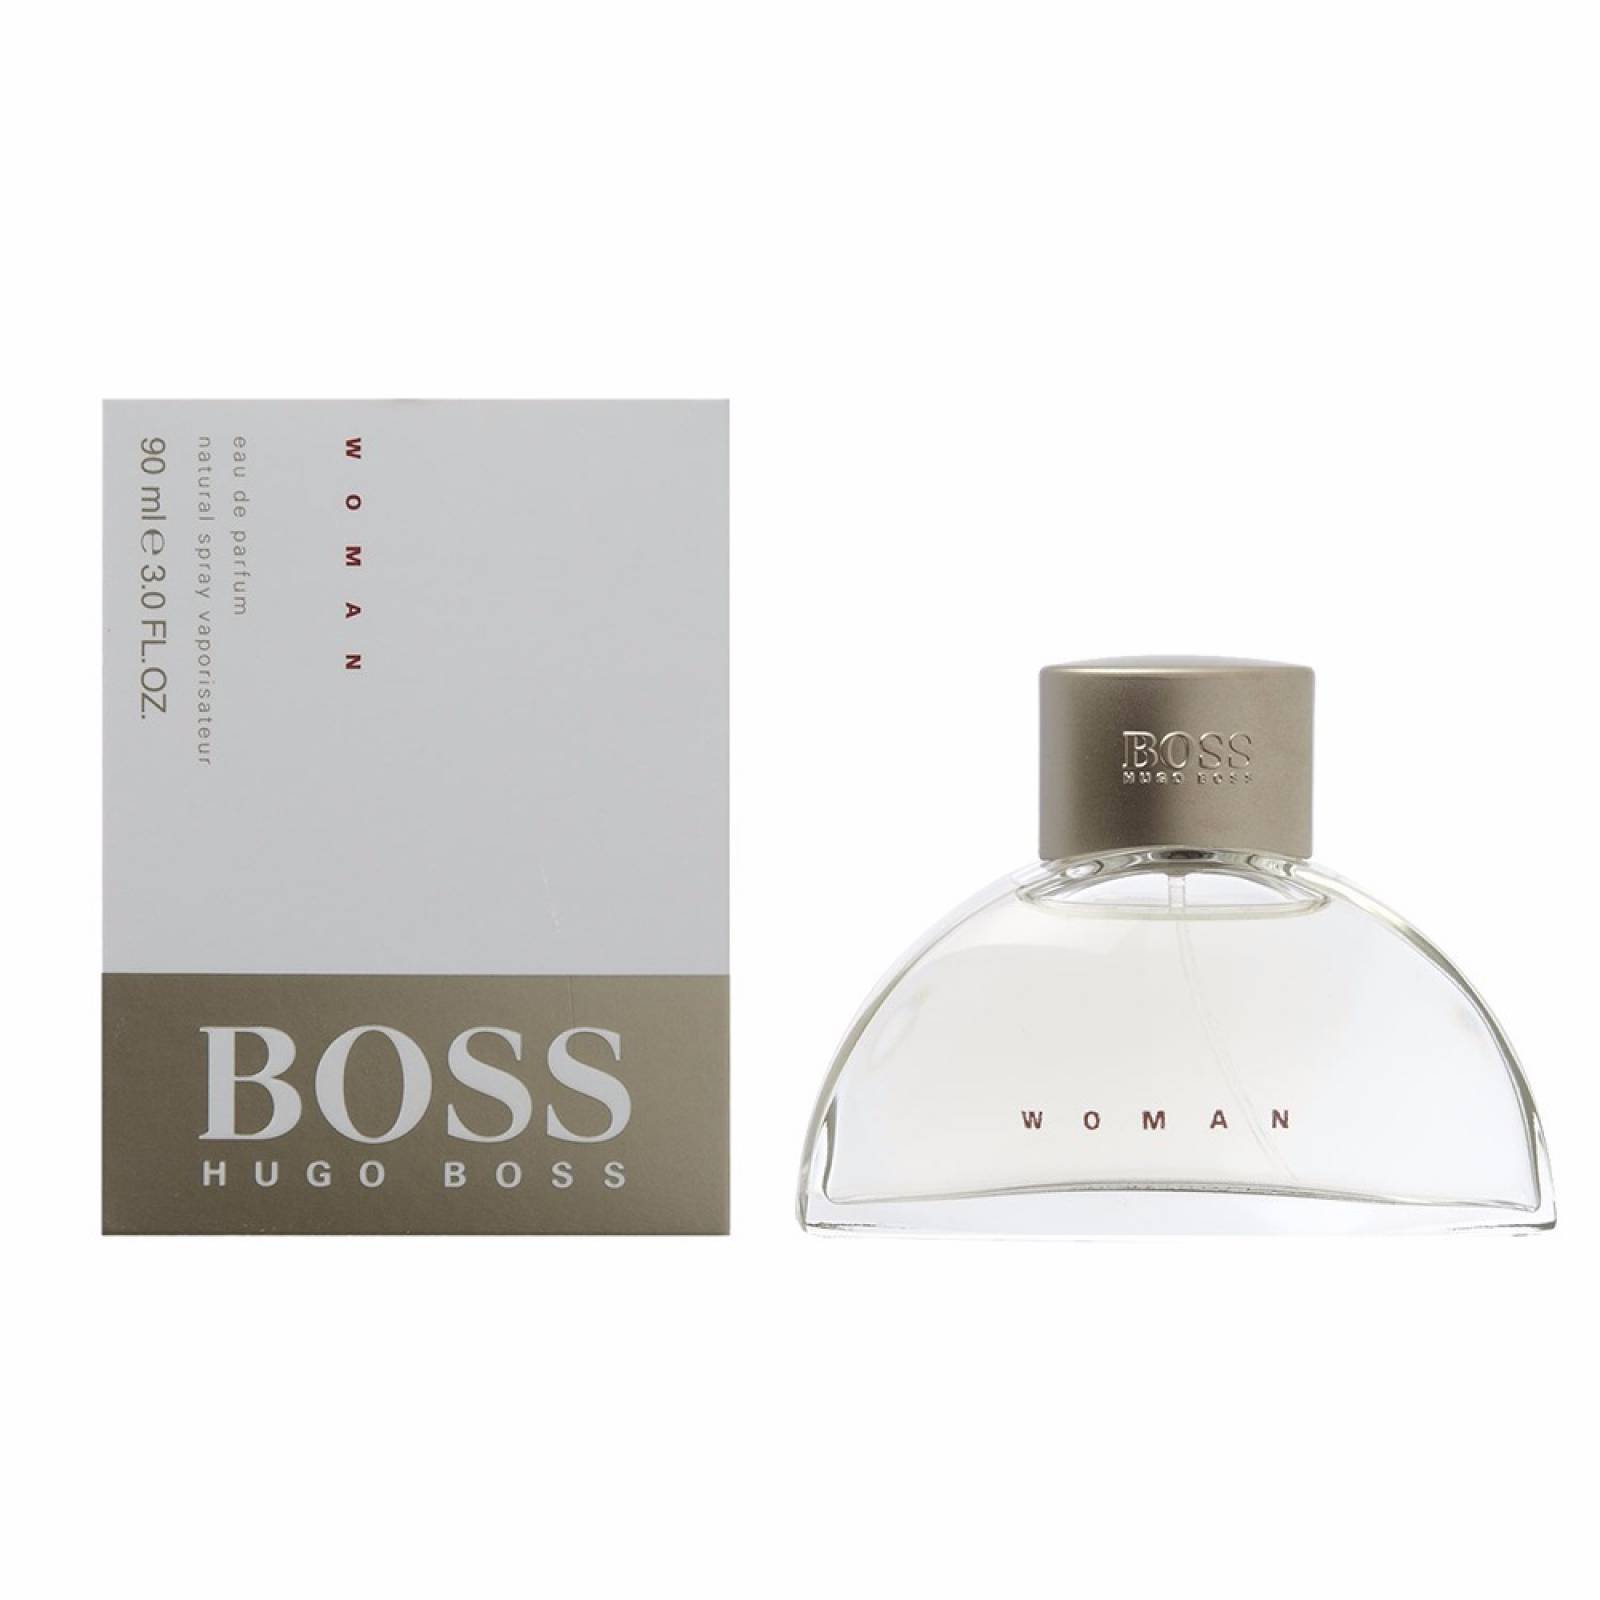 Hugo boss woman парфюмерная